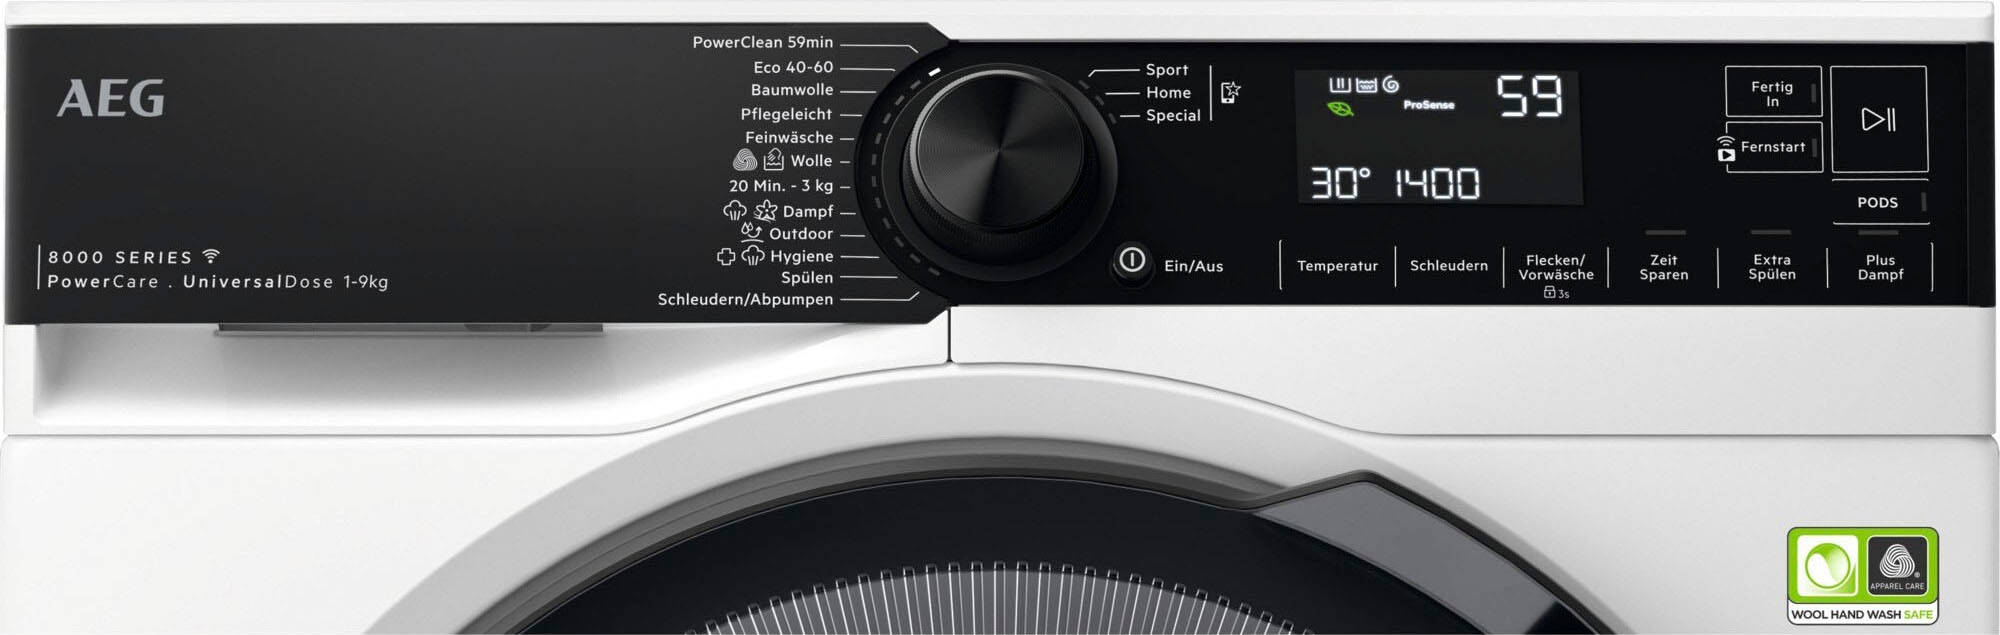 AEG Waschmaschine PowerClean bei 9 8000 U/min, 3 kg, mit LR8E75490, & 59 - 1400 PowerCare, °C Wifi »LR8E75490«, Min. Fleckenentfernung Jahren Garantie XXL in nur 30